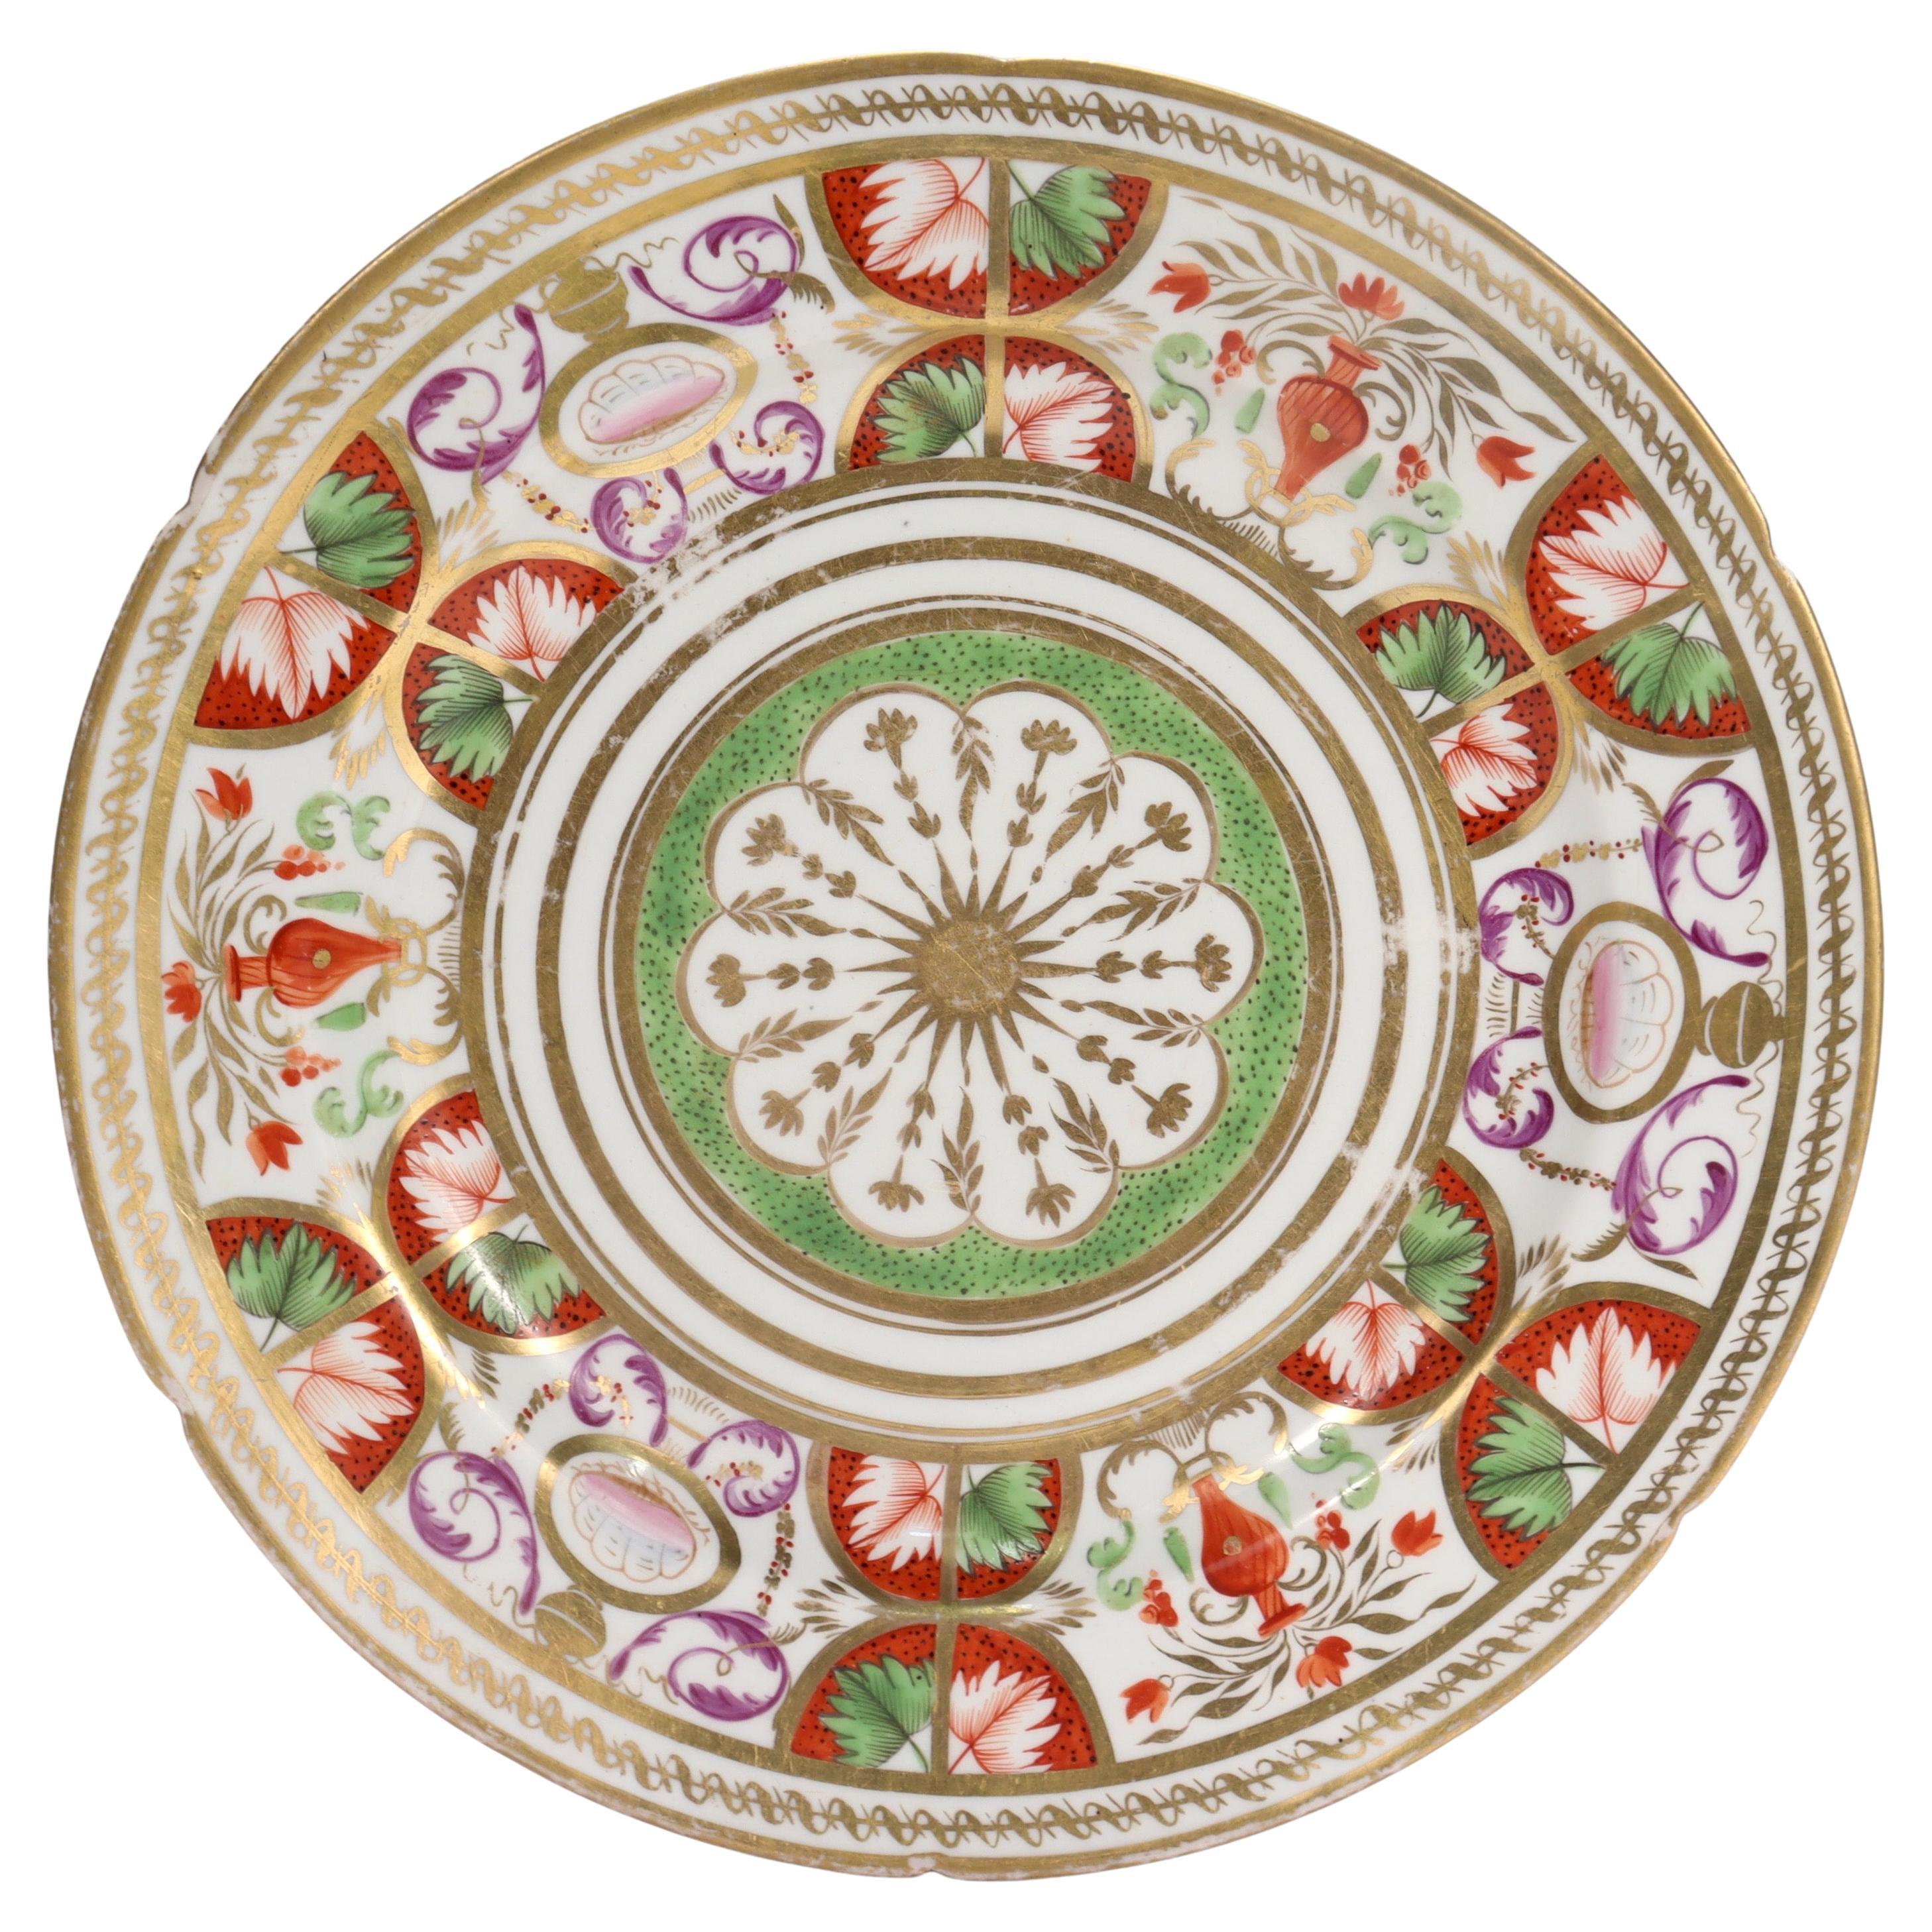 Ancienne assiette en porcelaine néoclassique anglaise attribuée à Coalport